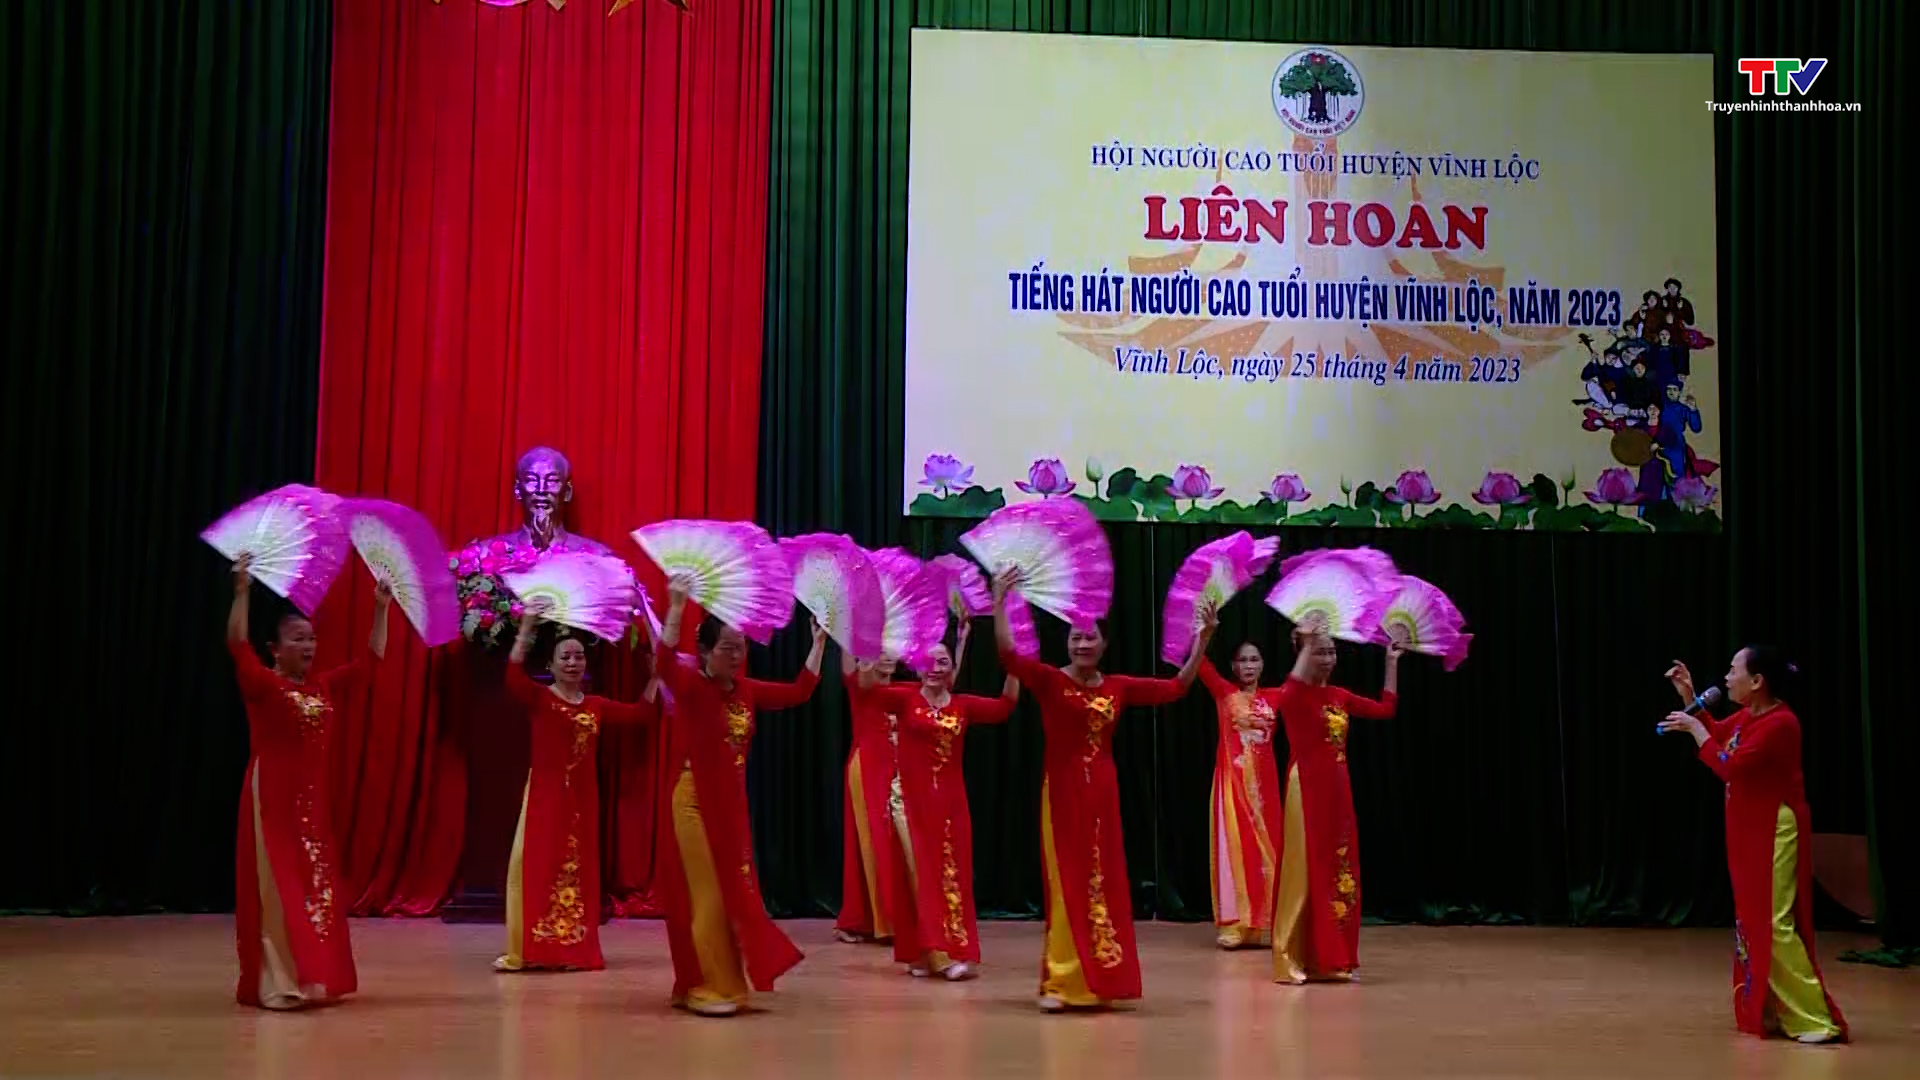 Hội thi tiếng hát người cao tuổi huyện Vĩnh Lộc năm 2023 - Ảnh 2.